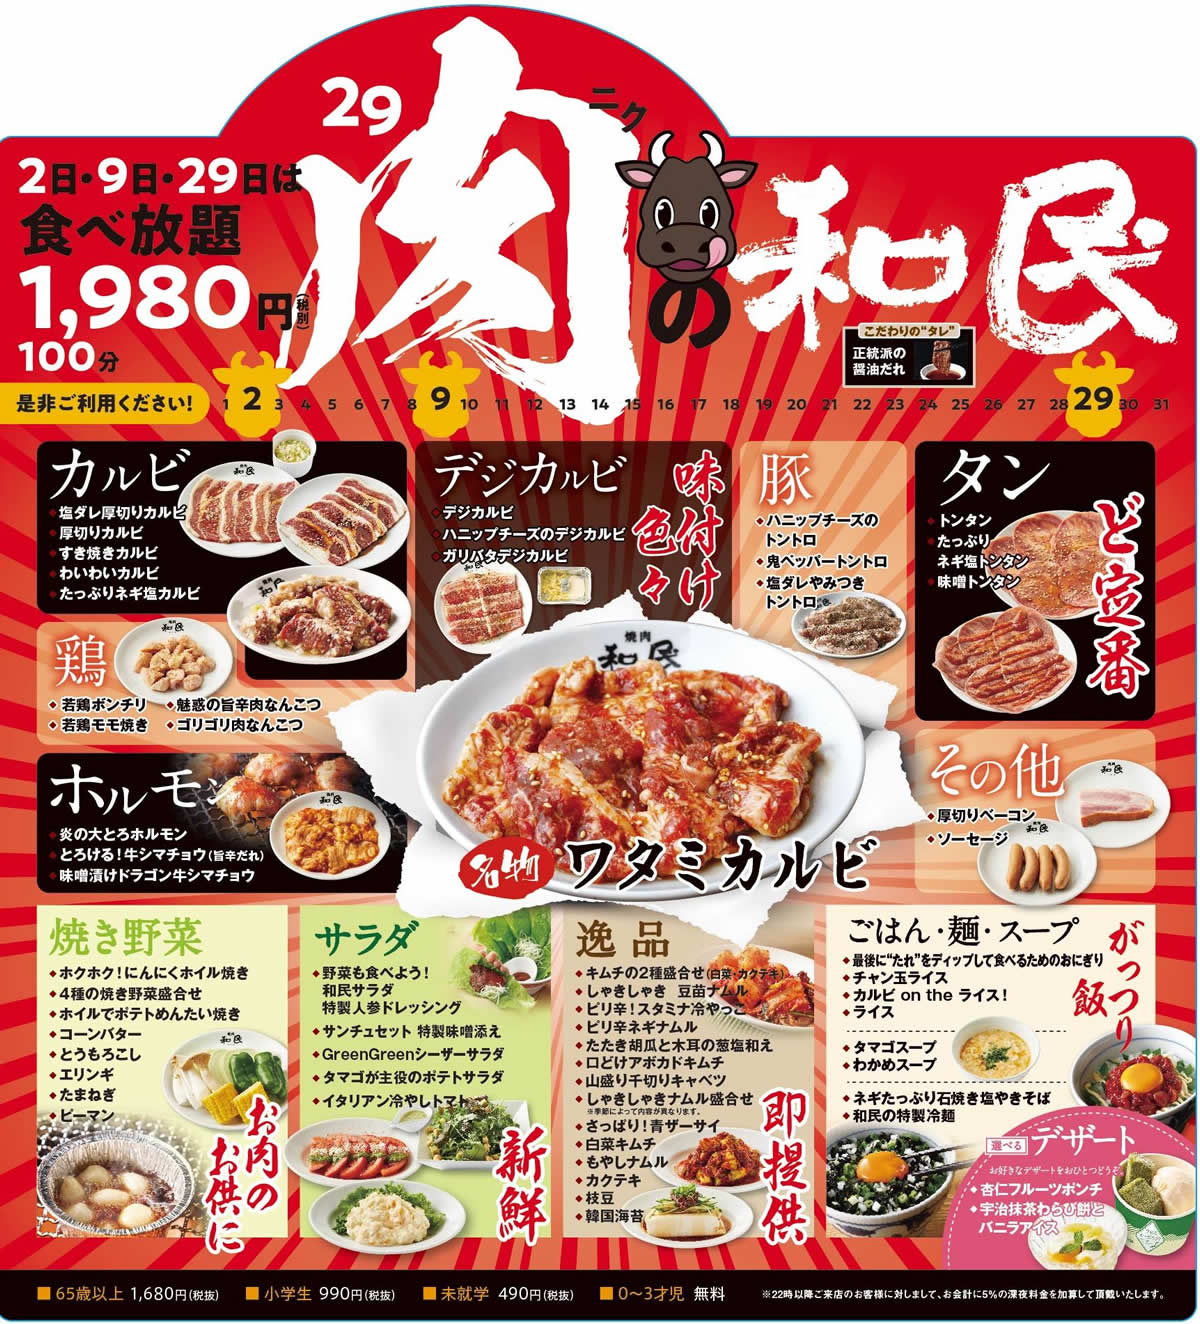 焼肉の和民 肉の日限定食べ放題コース 全60品 を100分 1 980円で提供 毎月2日 9日 29日に開催